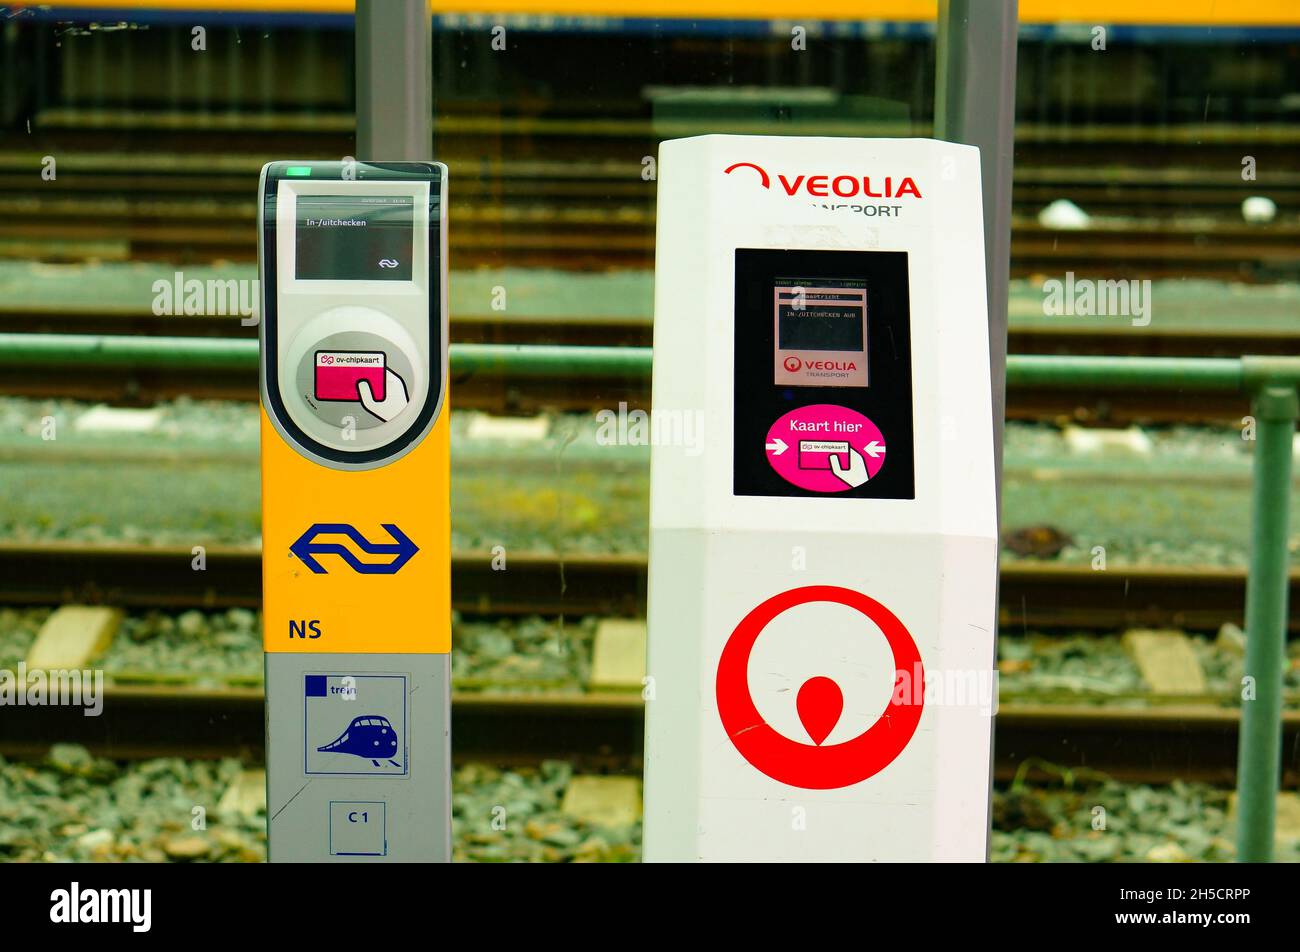 MAASTRICHT, PAESI BASSI - 22 feb 2015: I lettori di biglietti per i trasporti pubblici Veolia e Nederlandse Spoorwegen sono a una stazione ferroviaria. Maastricht, Foto Stock